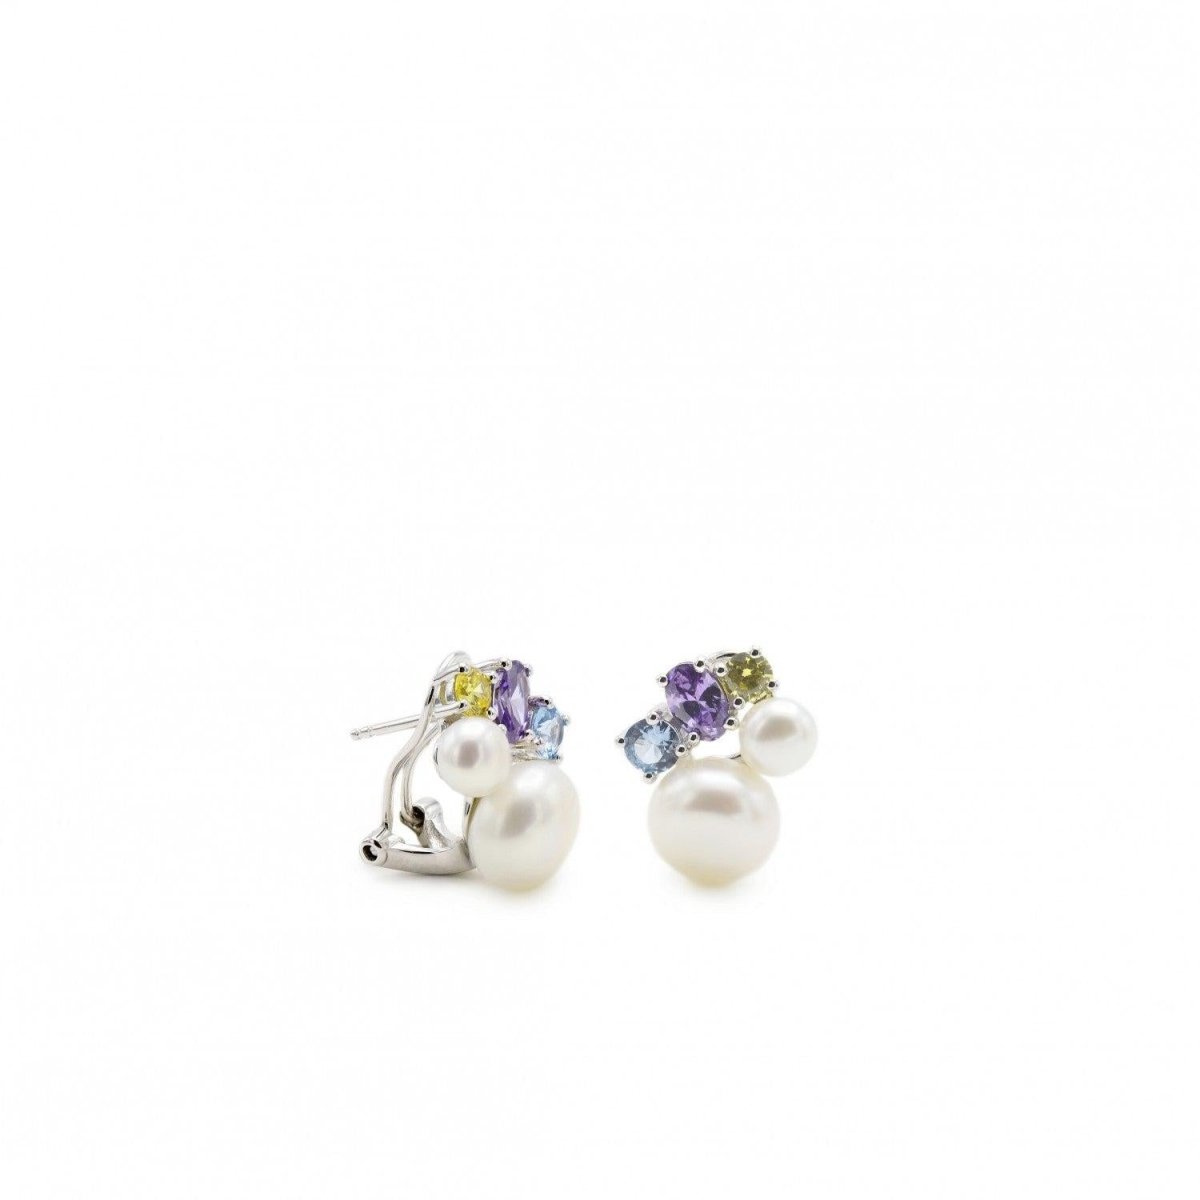 Pendiente · Pendientes perlas diseño doble perla y gemas multicolores